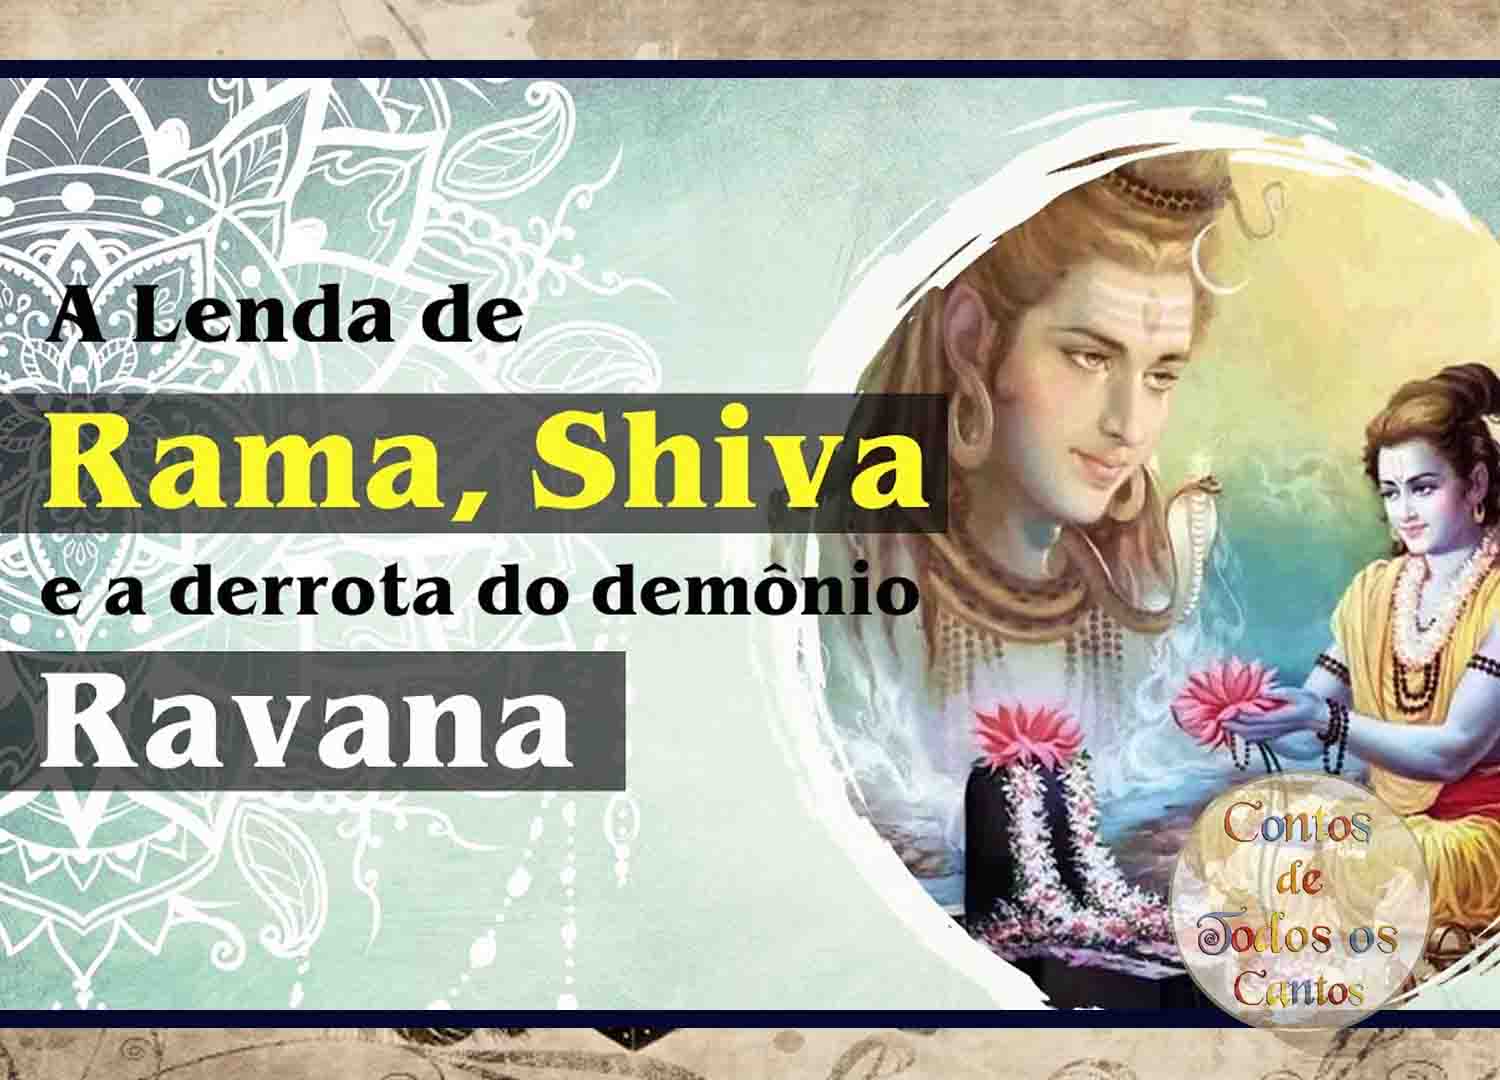 A lenda de Rama, Shiva e a Derrota do Demônio Ravana